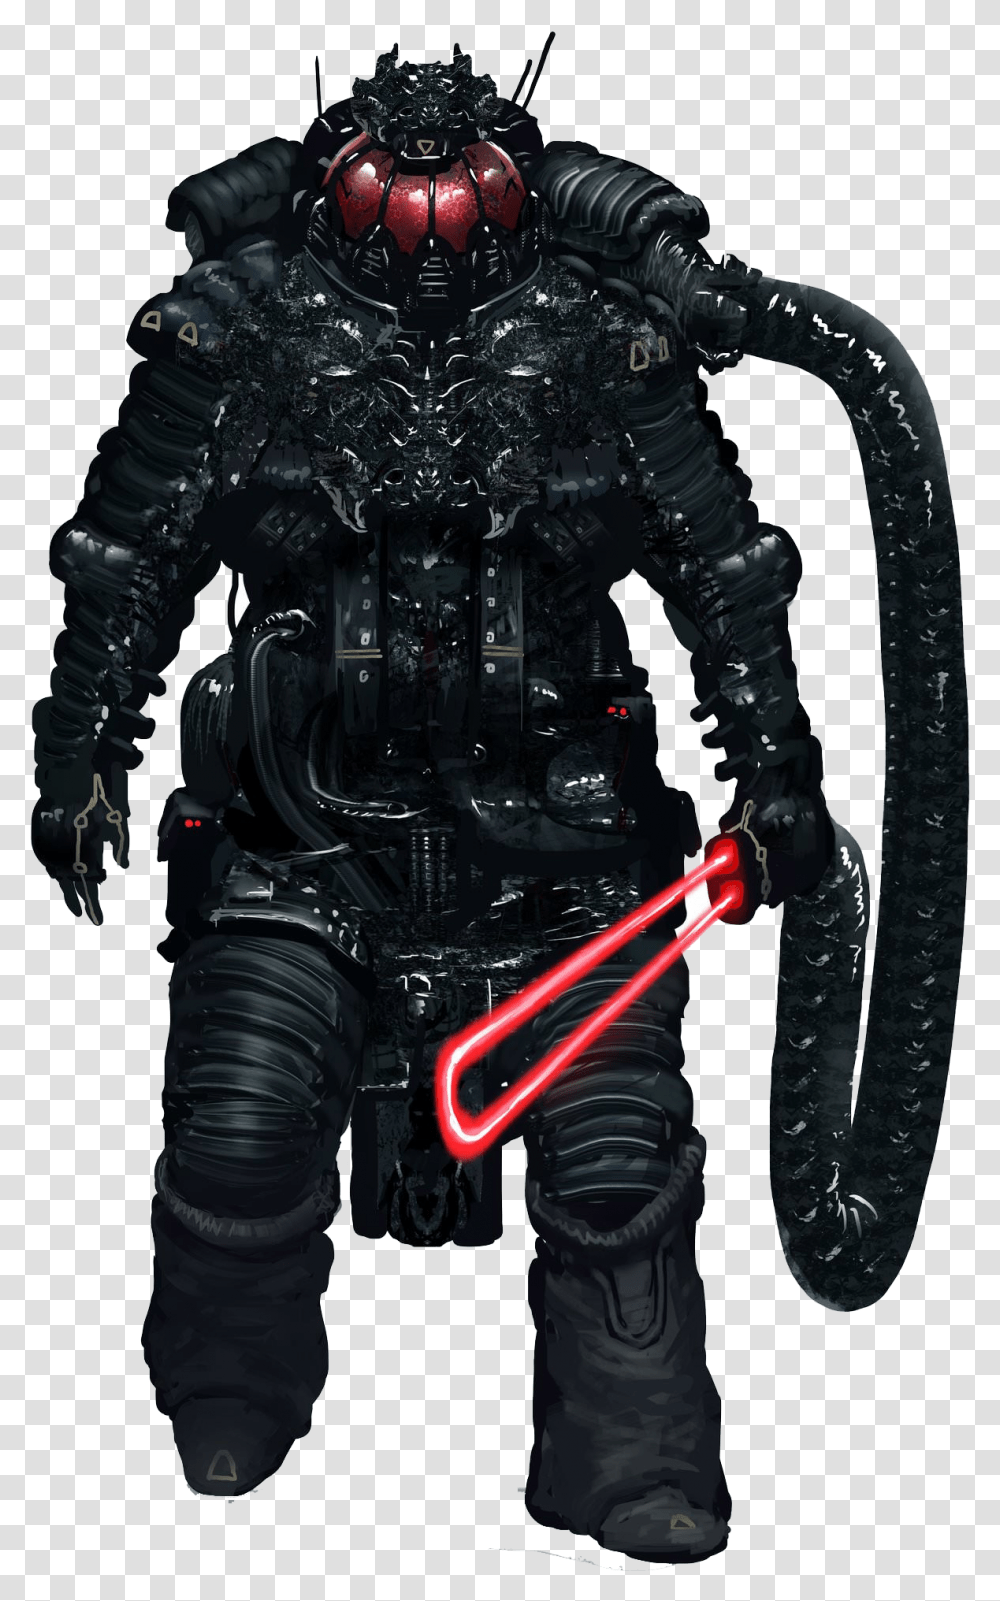 Darth Vader Free Action Figure, Machine, Motor, Engine, Coat Transparent Png